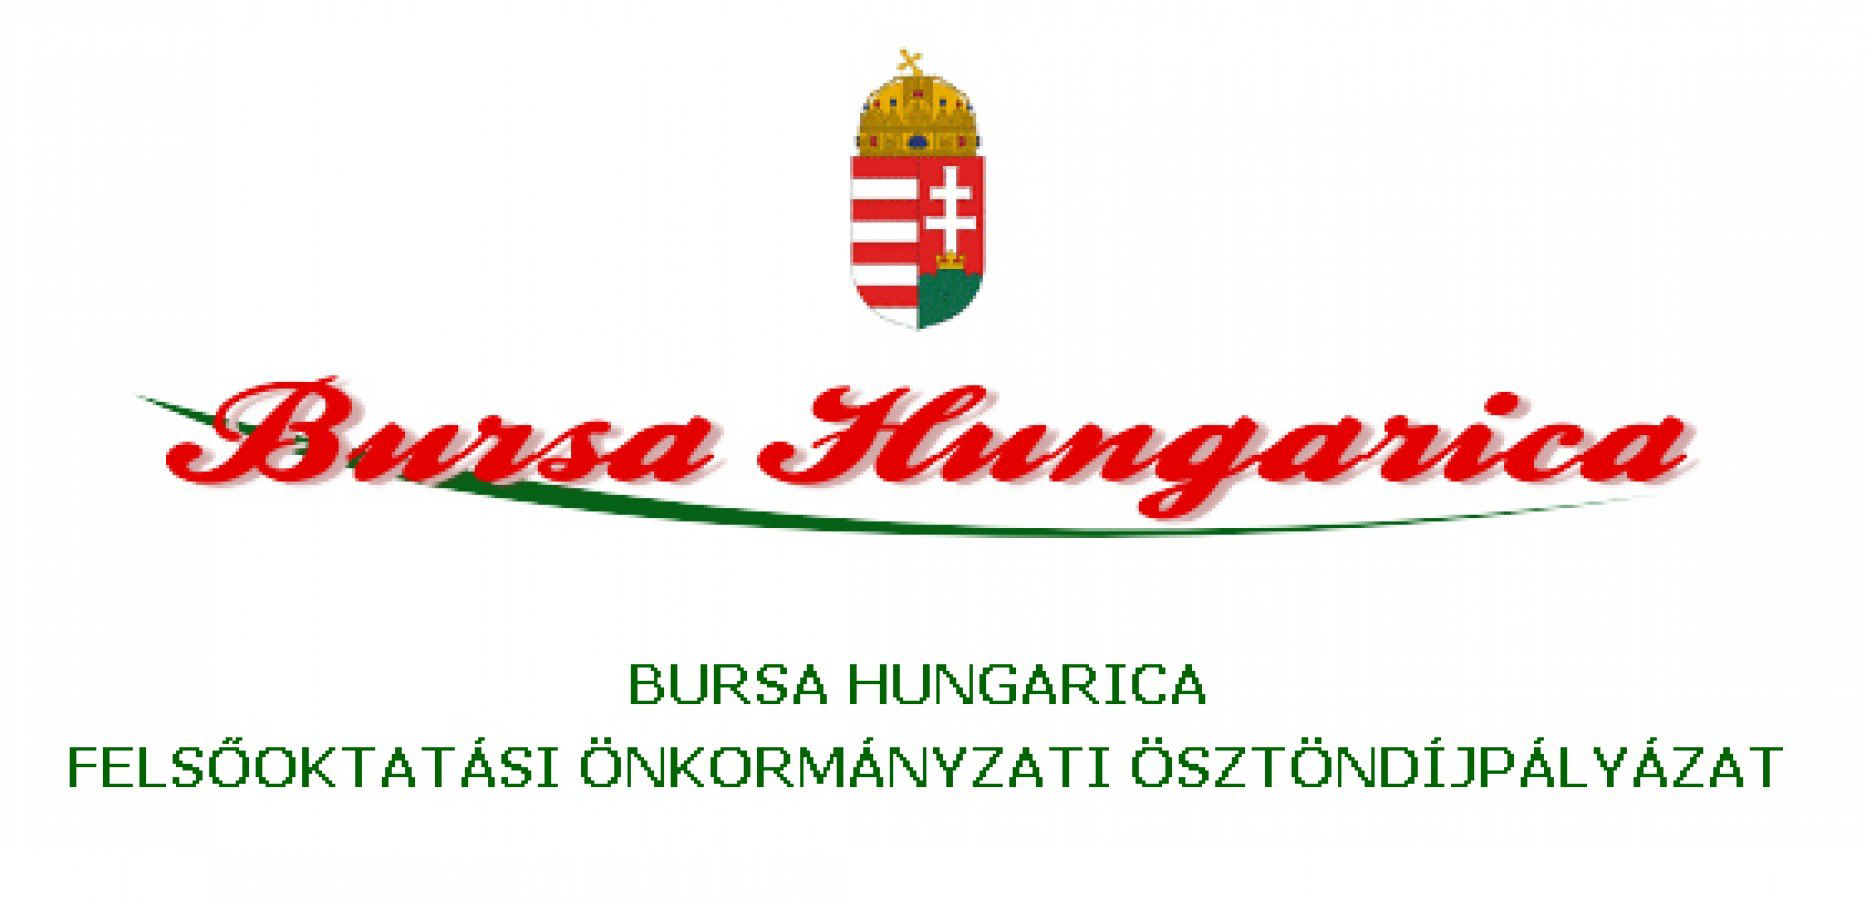 Bursa Hungarica pályázatok